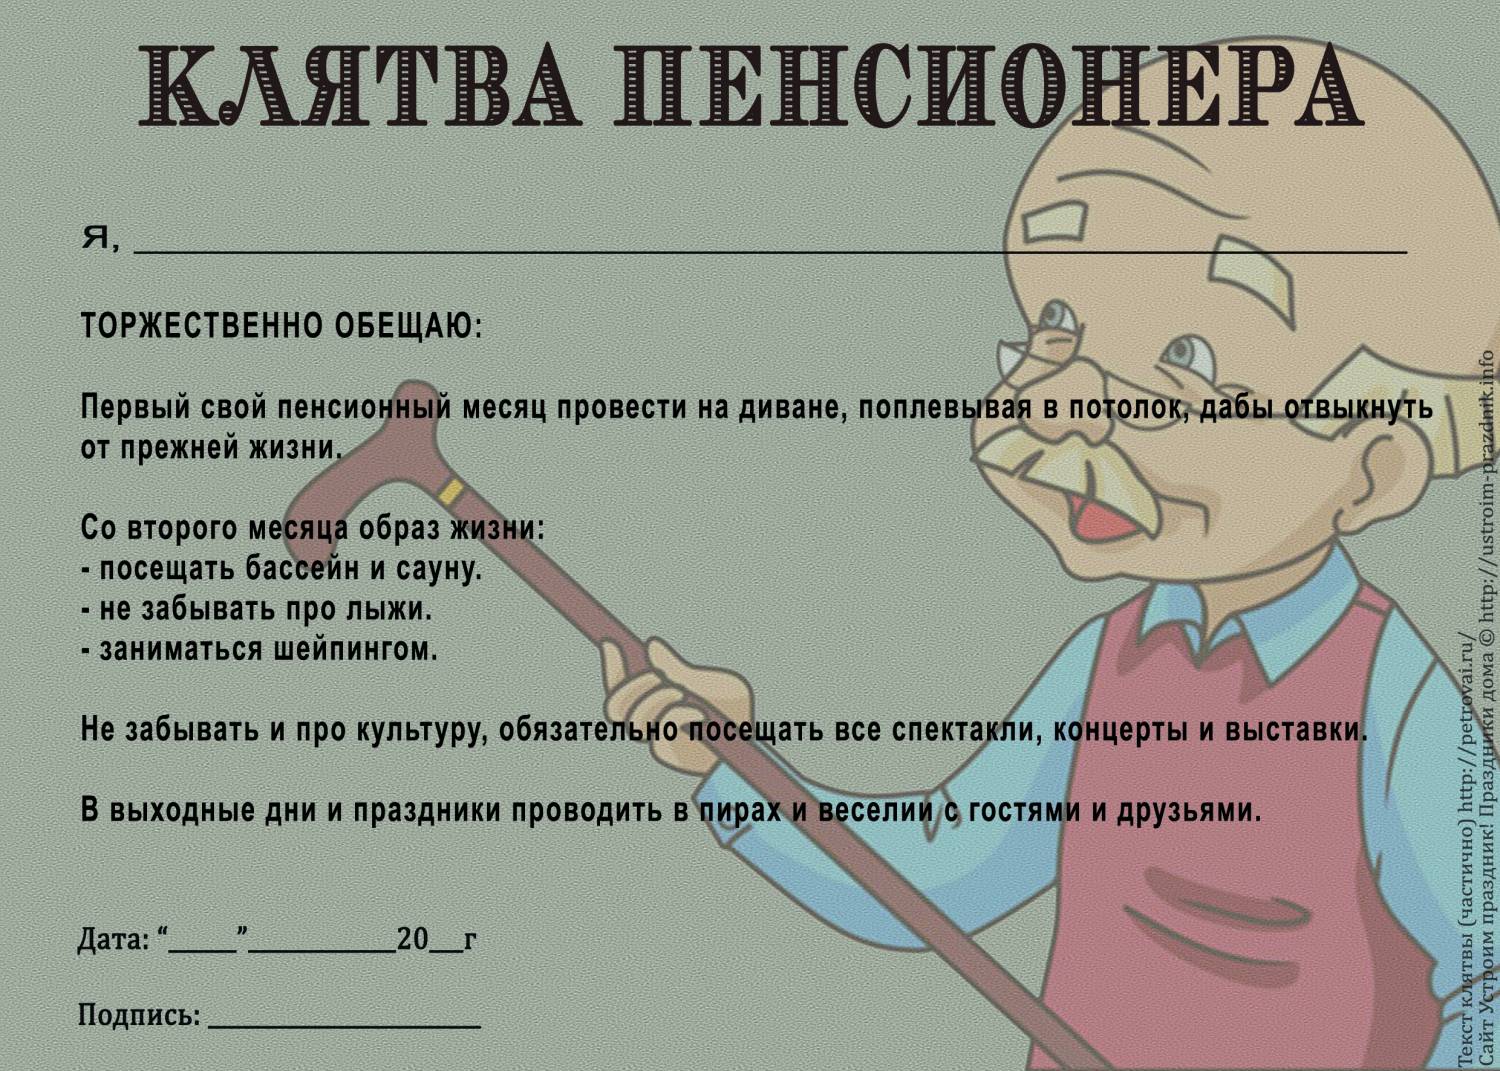 Шуточная клятва пенсионера ��������: http://ustroim-prazdnik.info/publ/podgotovka_k_prazdniku/diplomy_gramoty/shutochnaja_kljatva_pensionera/66-1-0-716